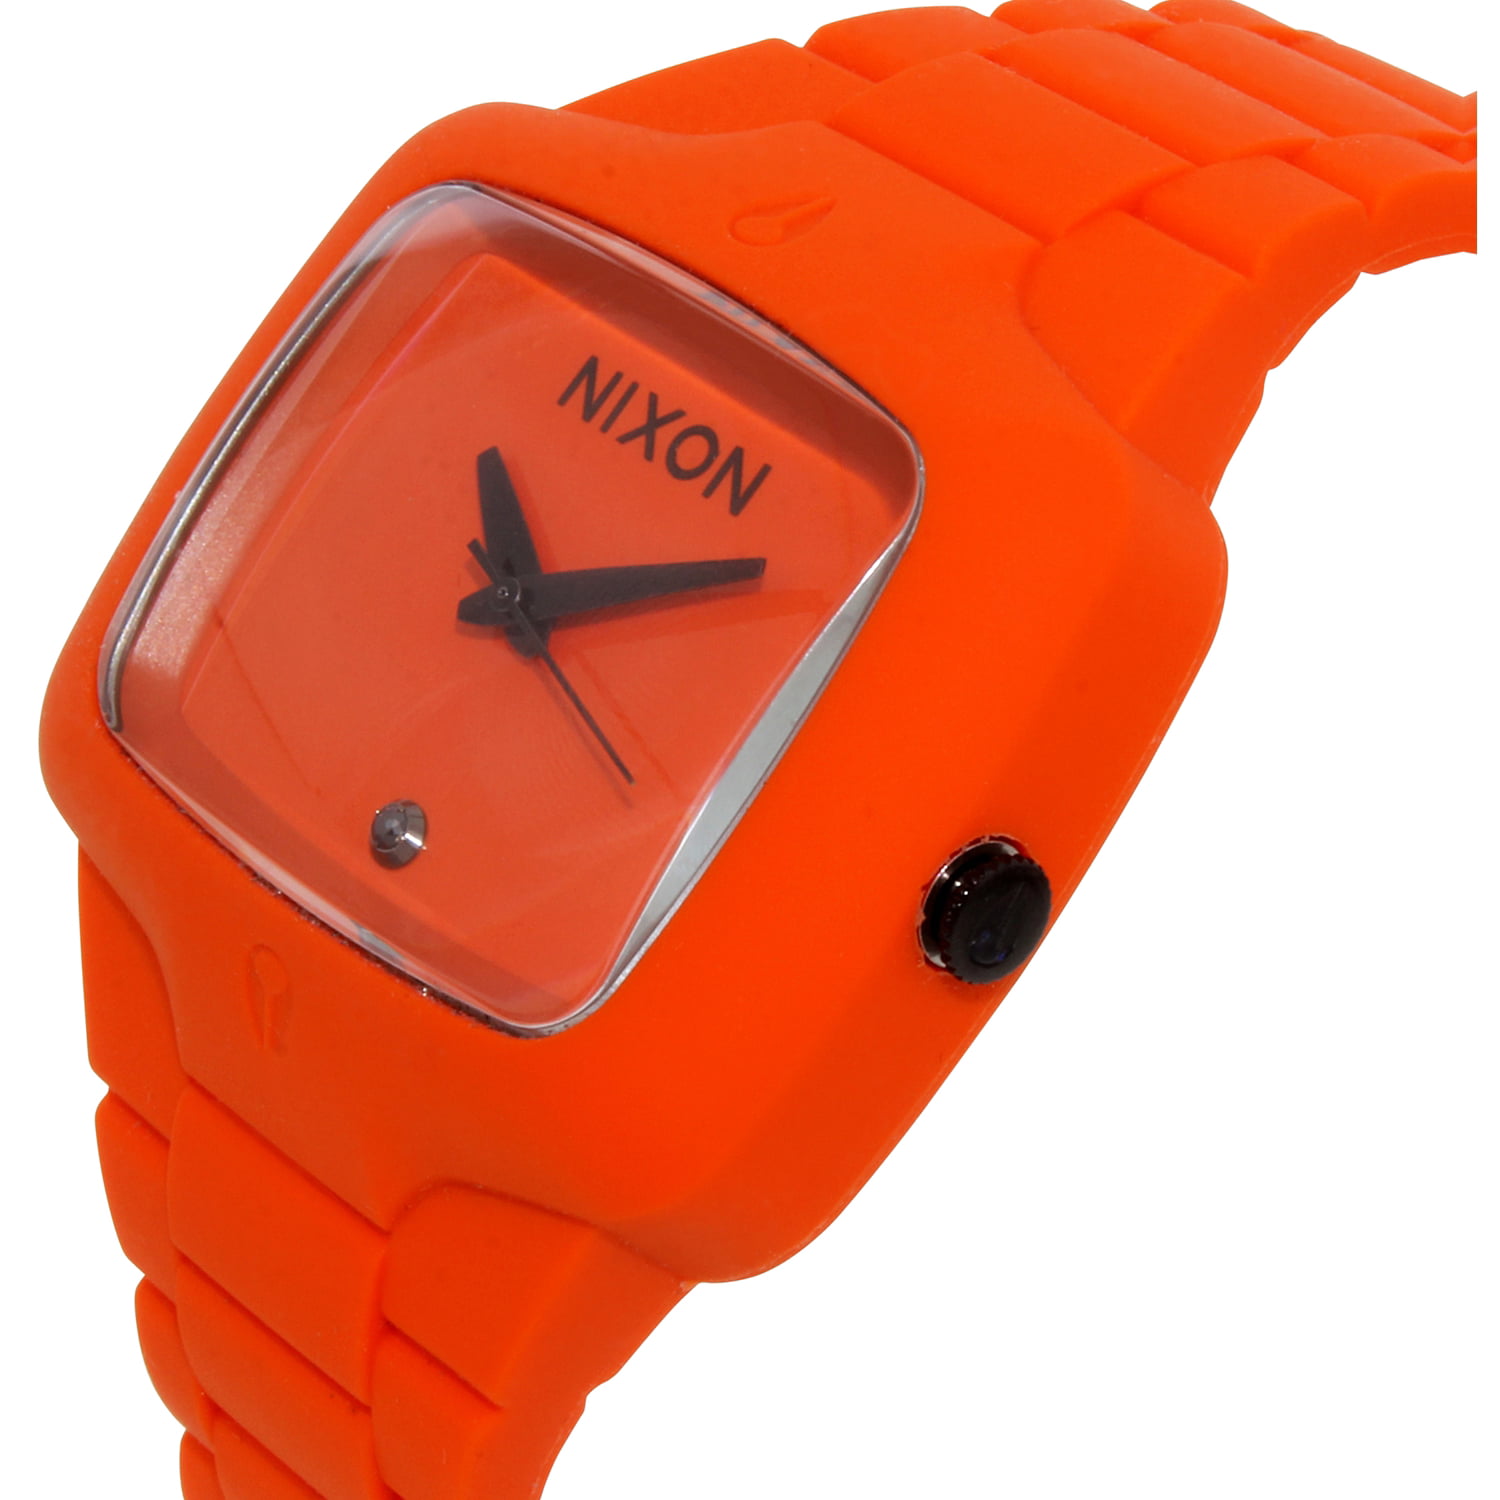 Nixon Men's Rubber Player A139211 Orange Quartz Fashion Watch